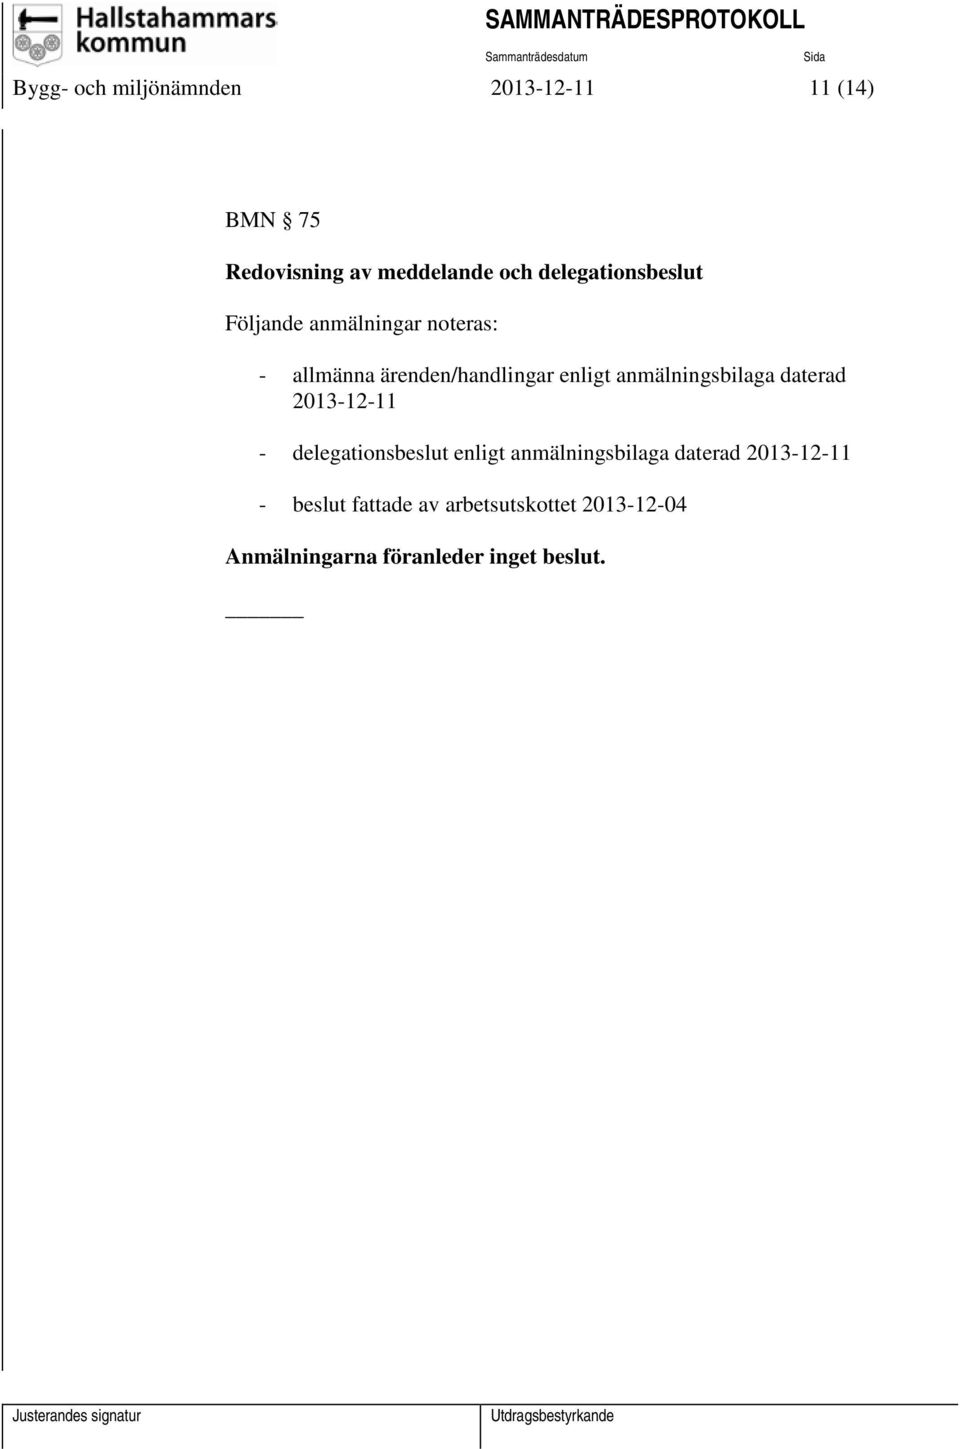 anmälningsbilaga daterad 2013-12-11 - delegationsbeslut enligt anmälningsbilaga